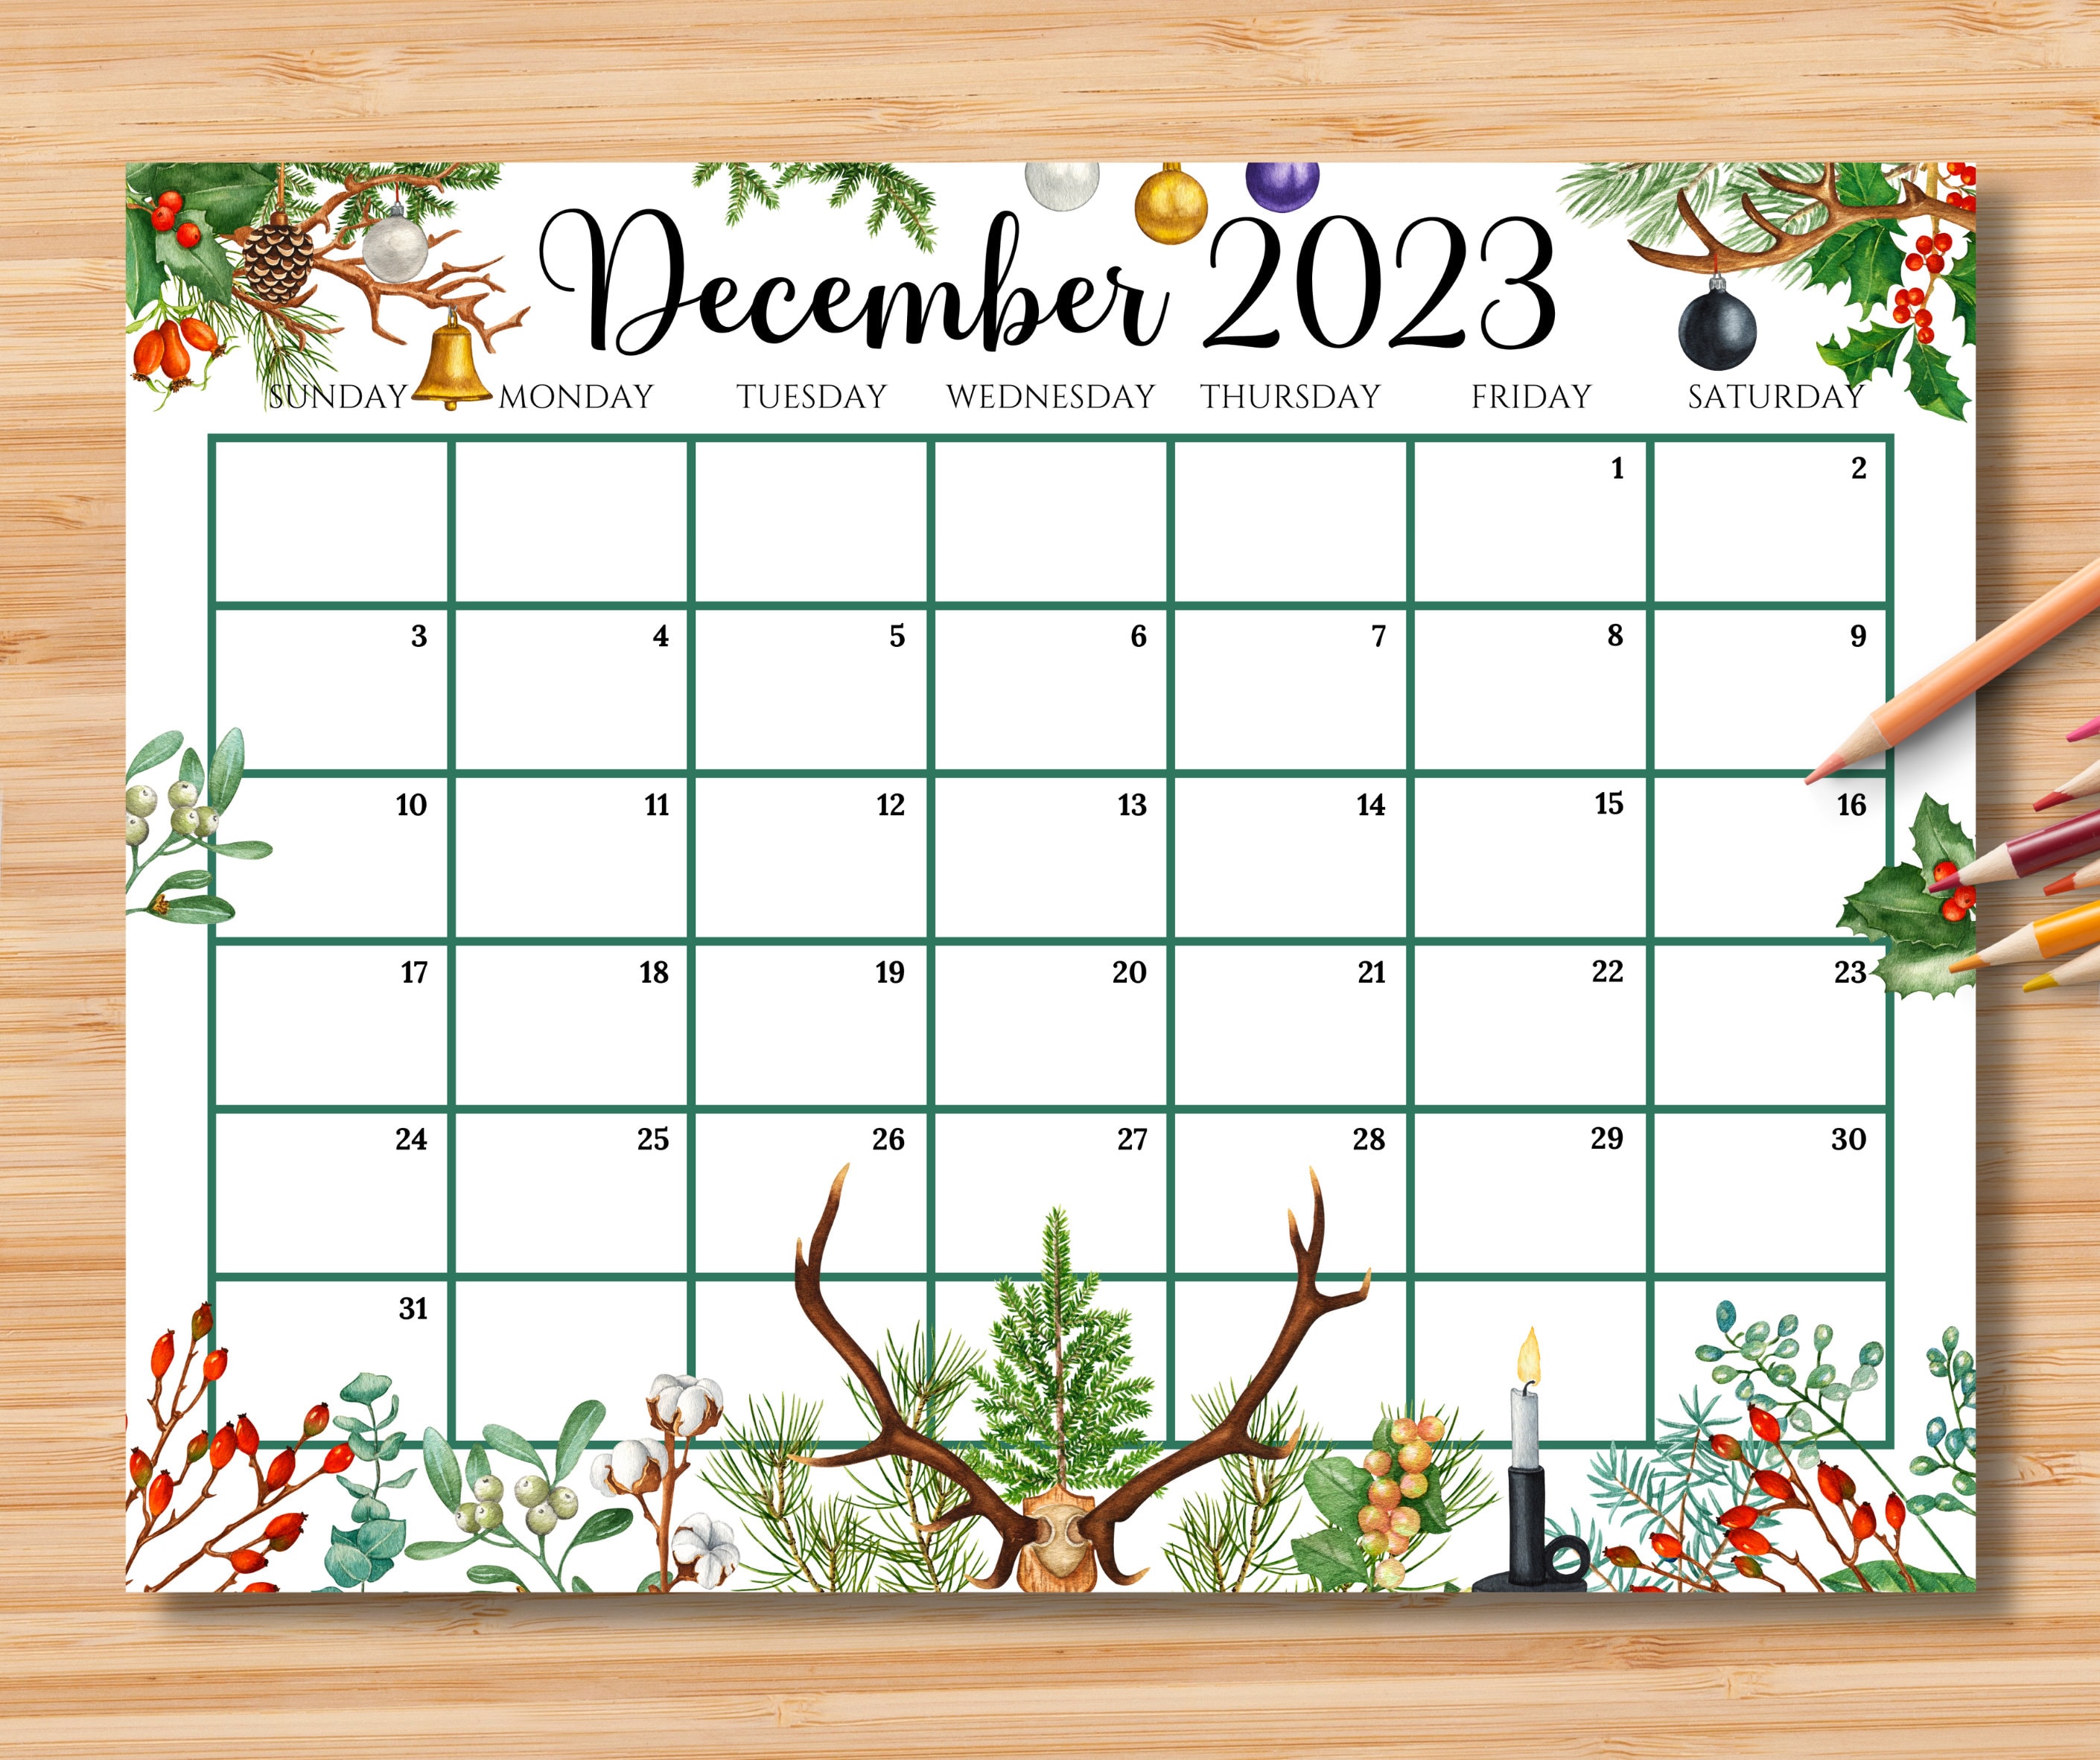 EDITABLE December 2023 Calendar Christmas With Etsy Australia